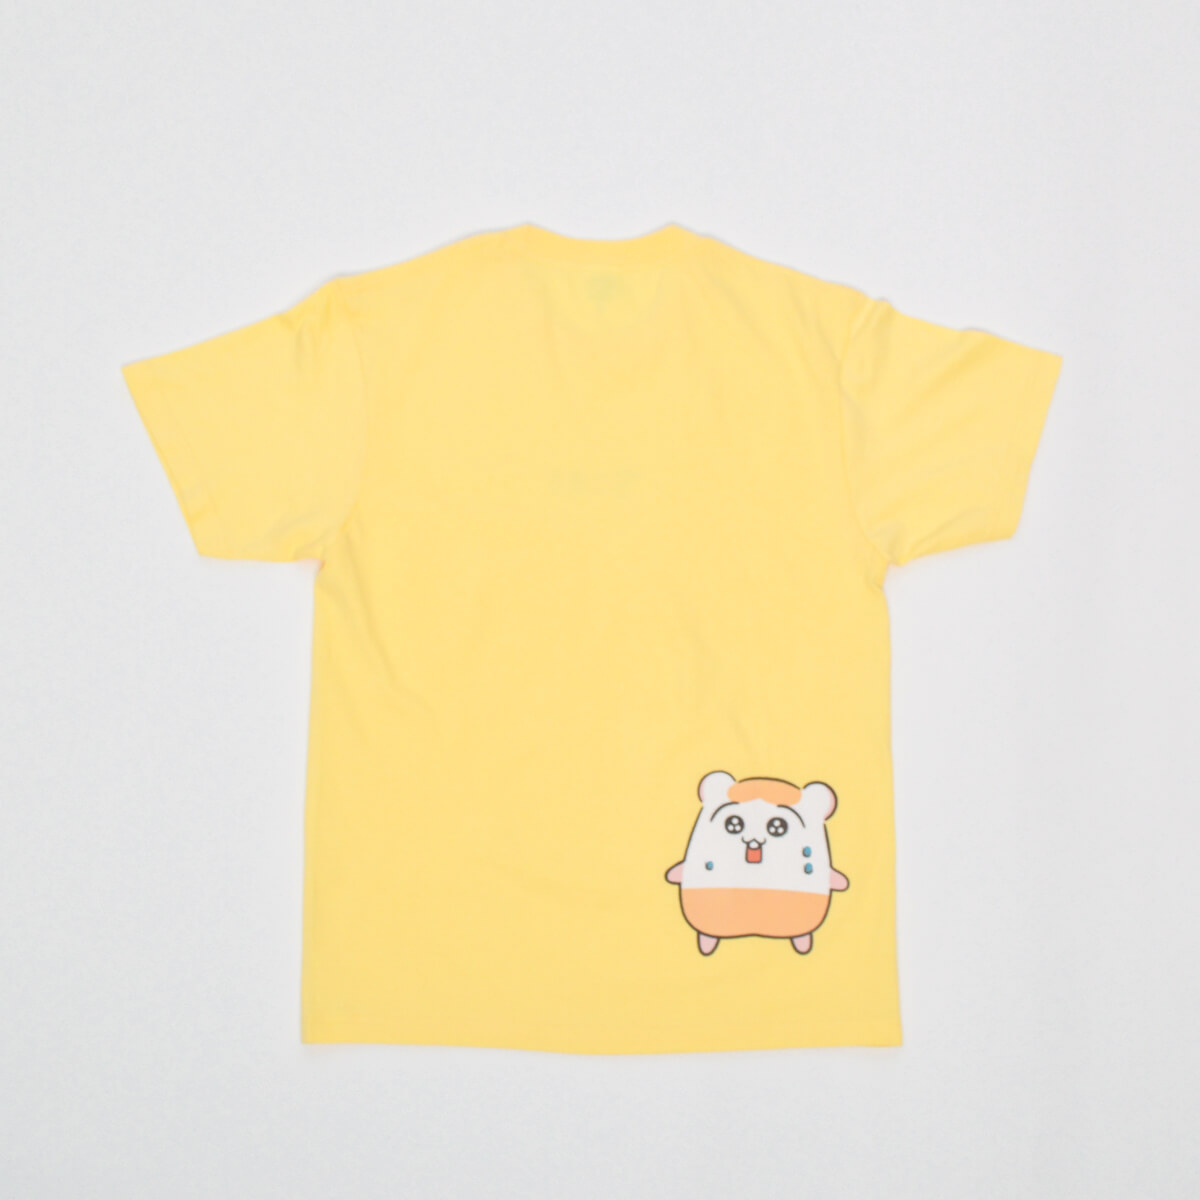 Tシャツ「ちこまる」ちこまるビクビク/レモン